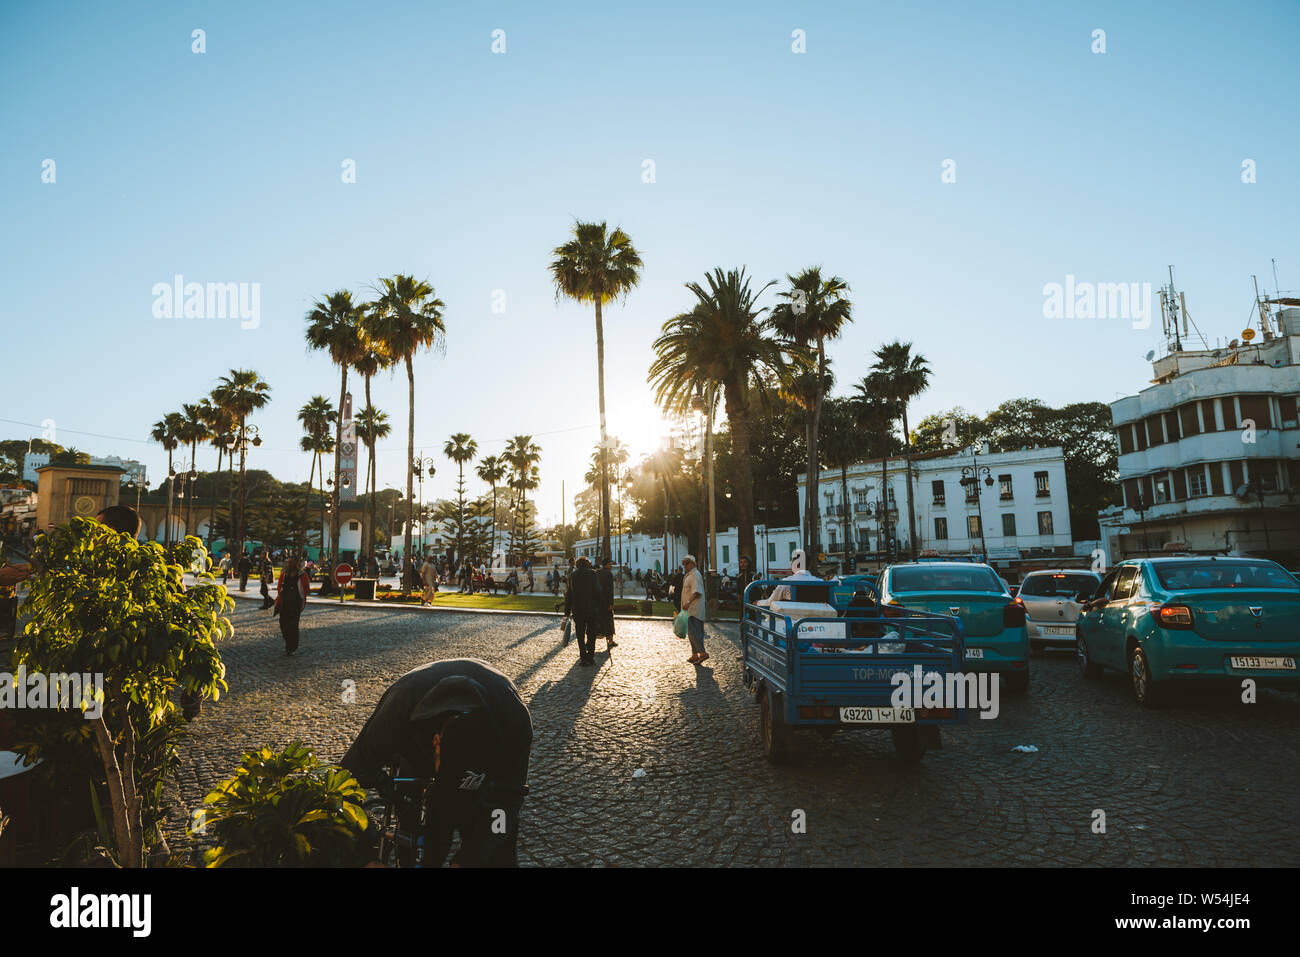 Tangeri, Marocco, Maggio 11th, 2019: Gran Socco (significato grande piazza, ufficialmente conosciuta come la Place du Grand 9 Avril 1947) è una piazza nel cuore della medina di area Foto Stock